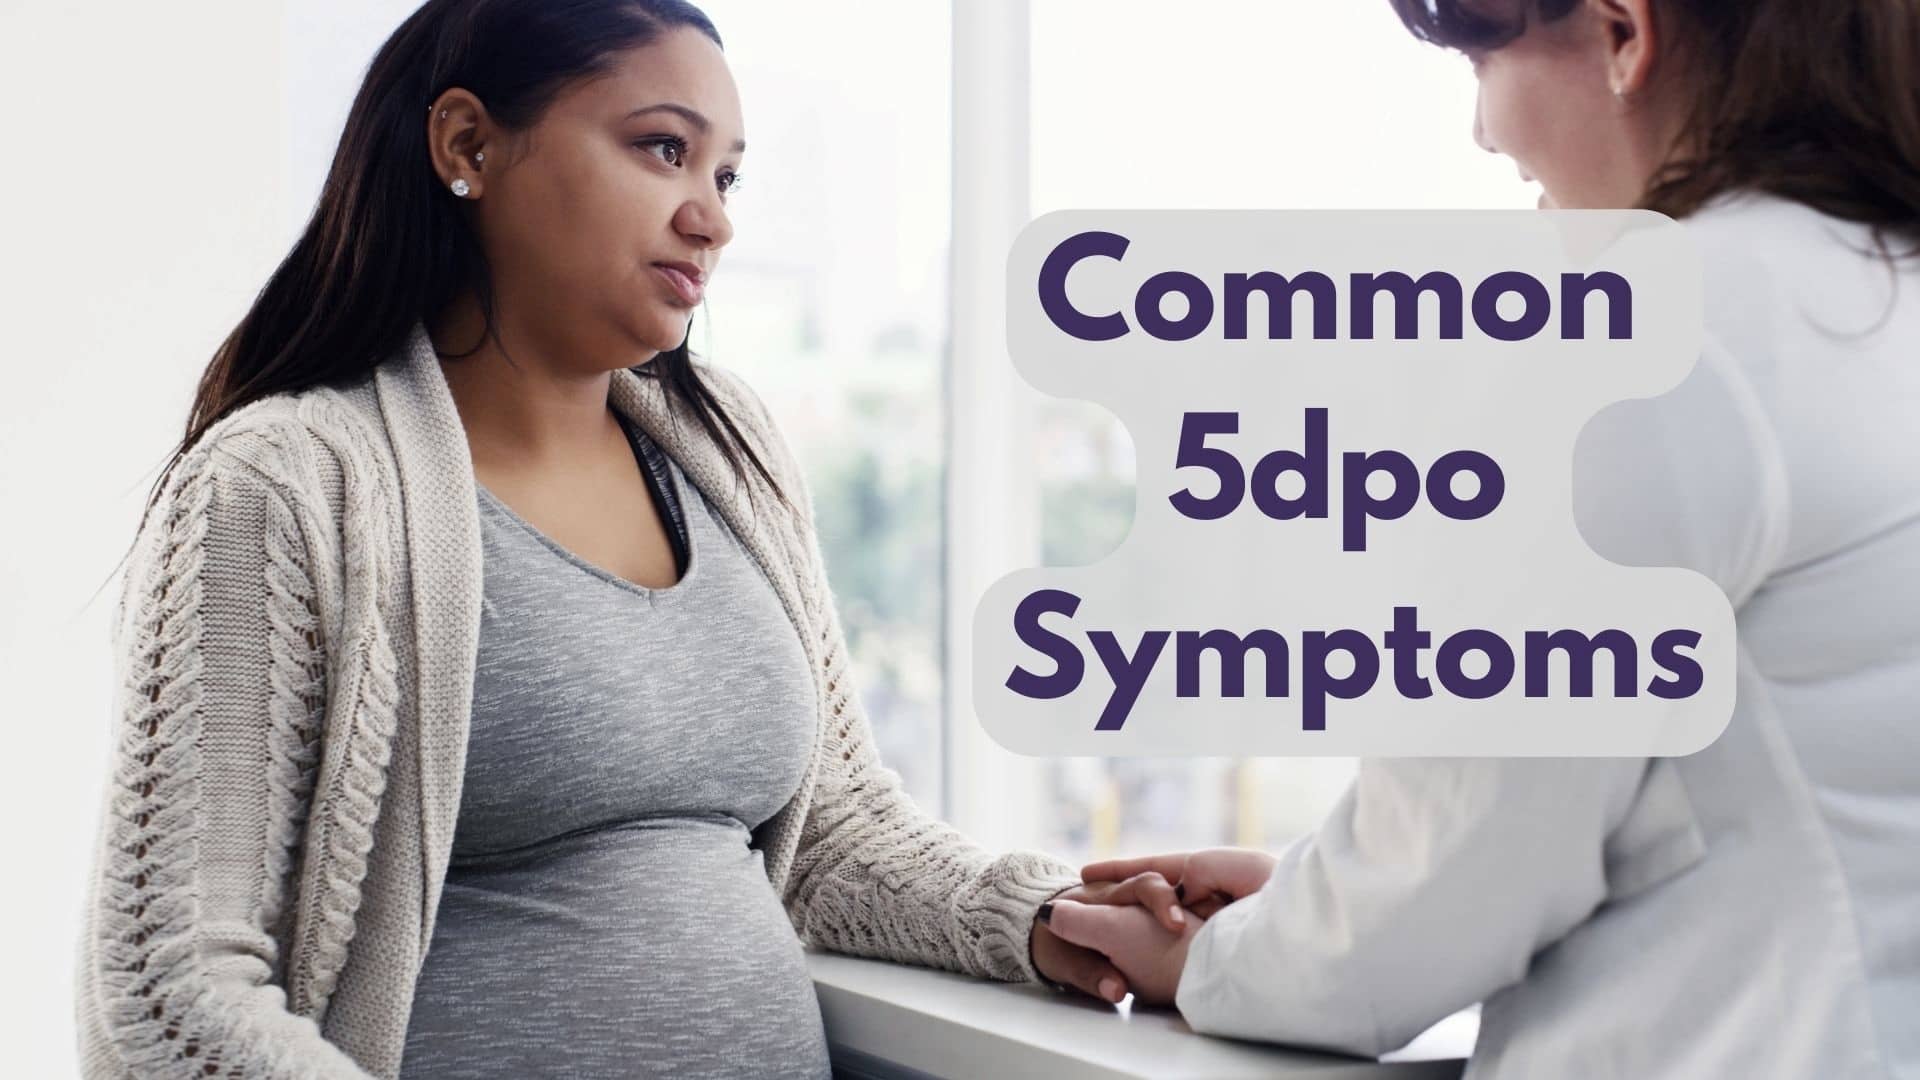 Common 5dpo Symptoms